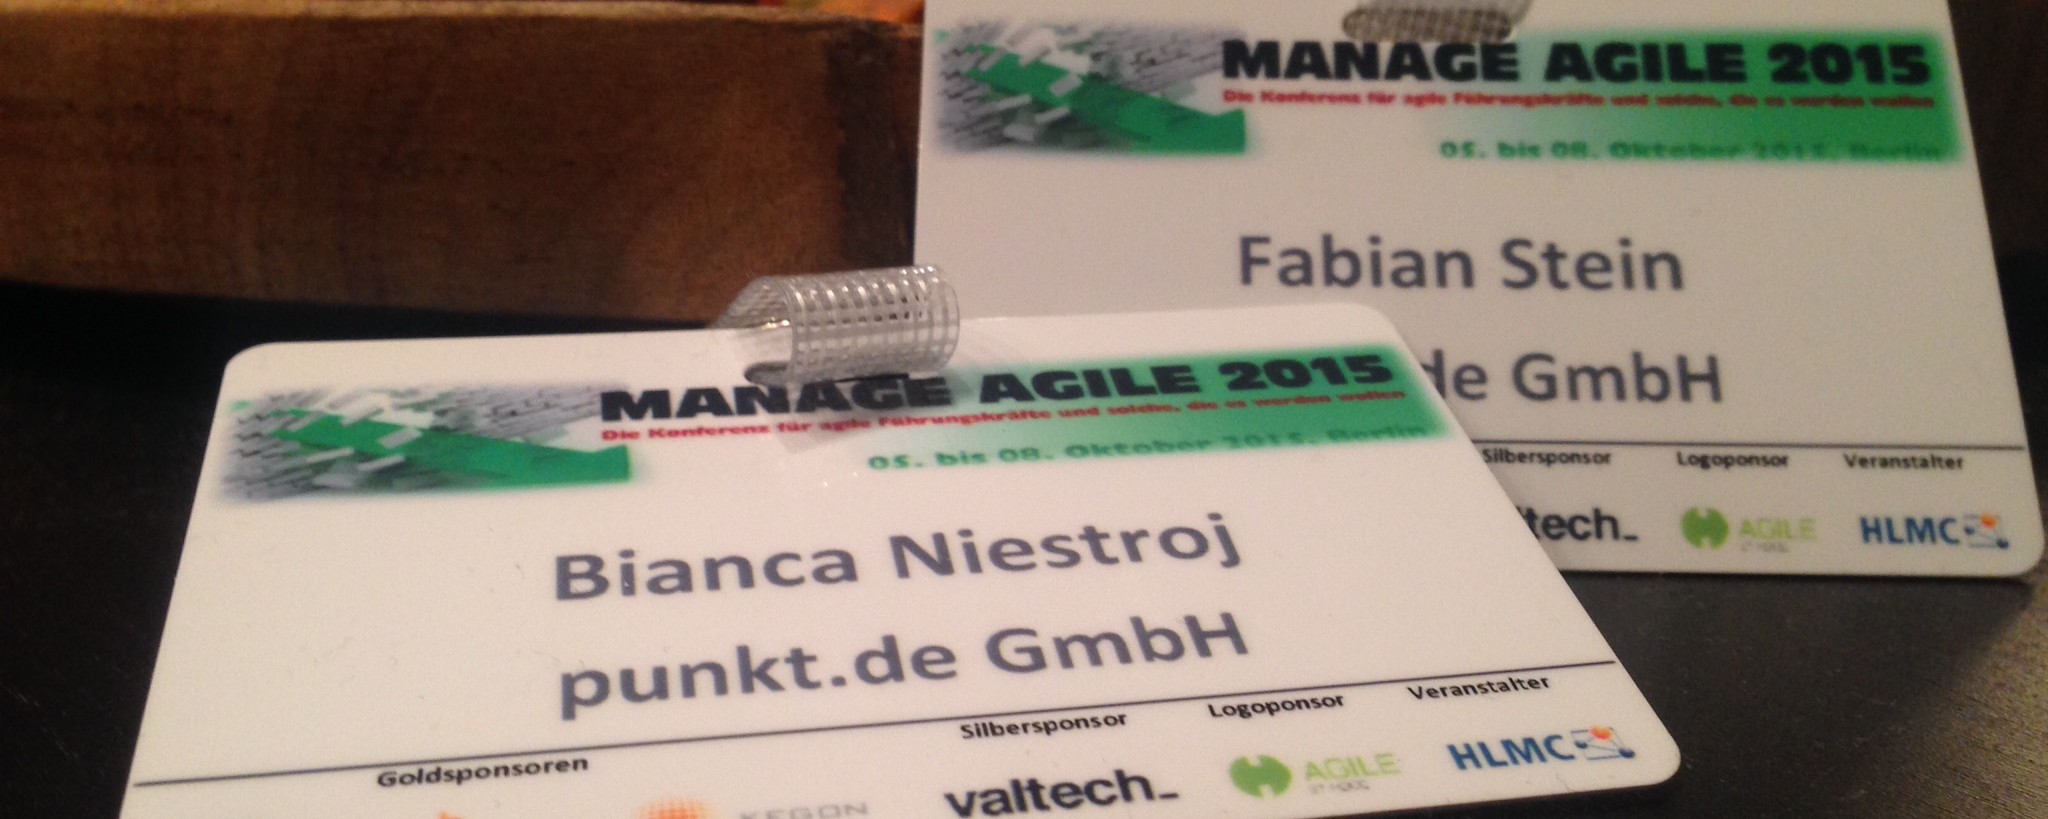 Manage Agile 2015 - ein kleiner Rückblick